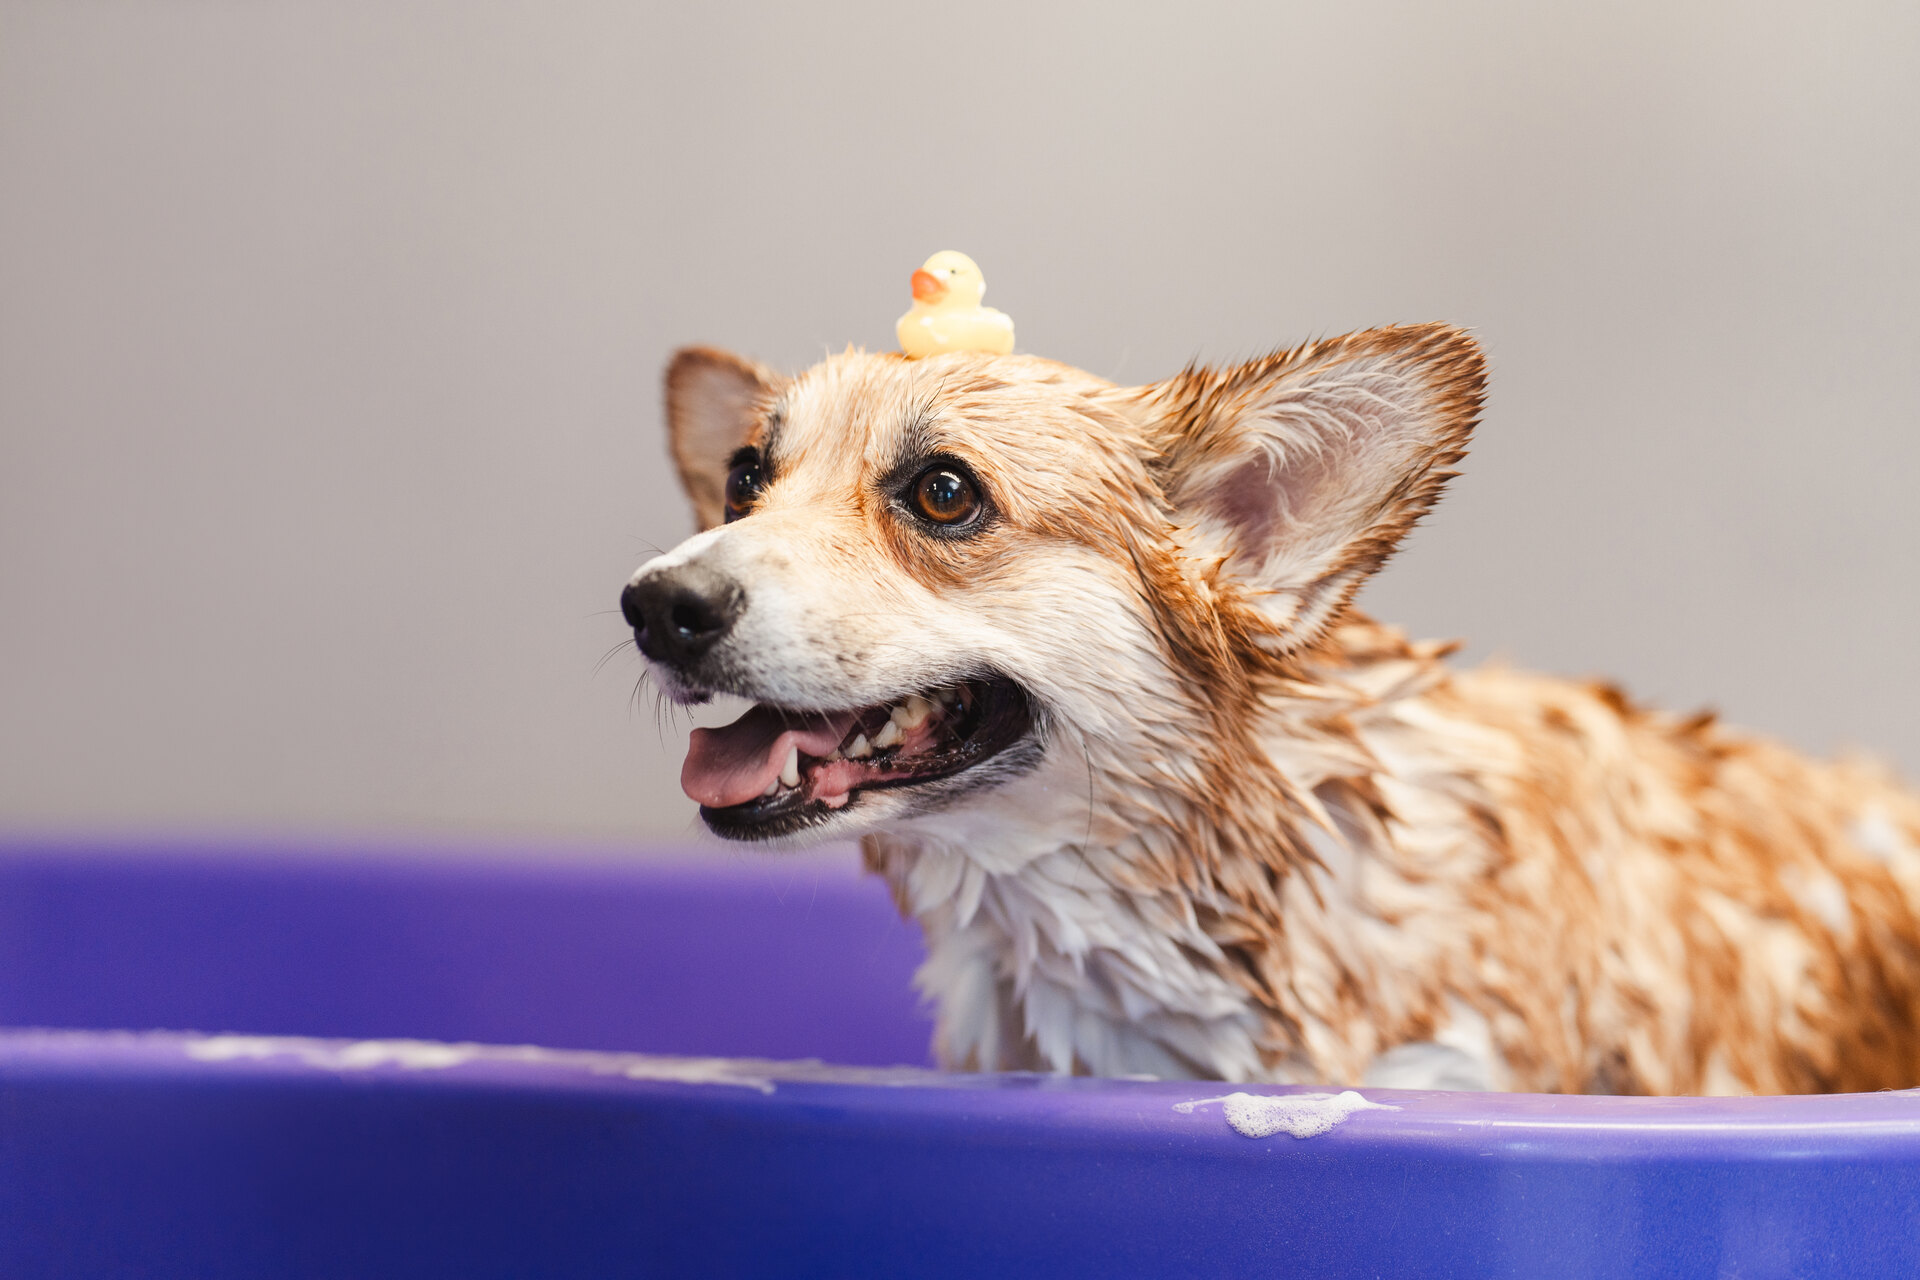 A dog sitting in a bathtub